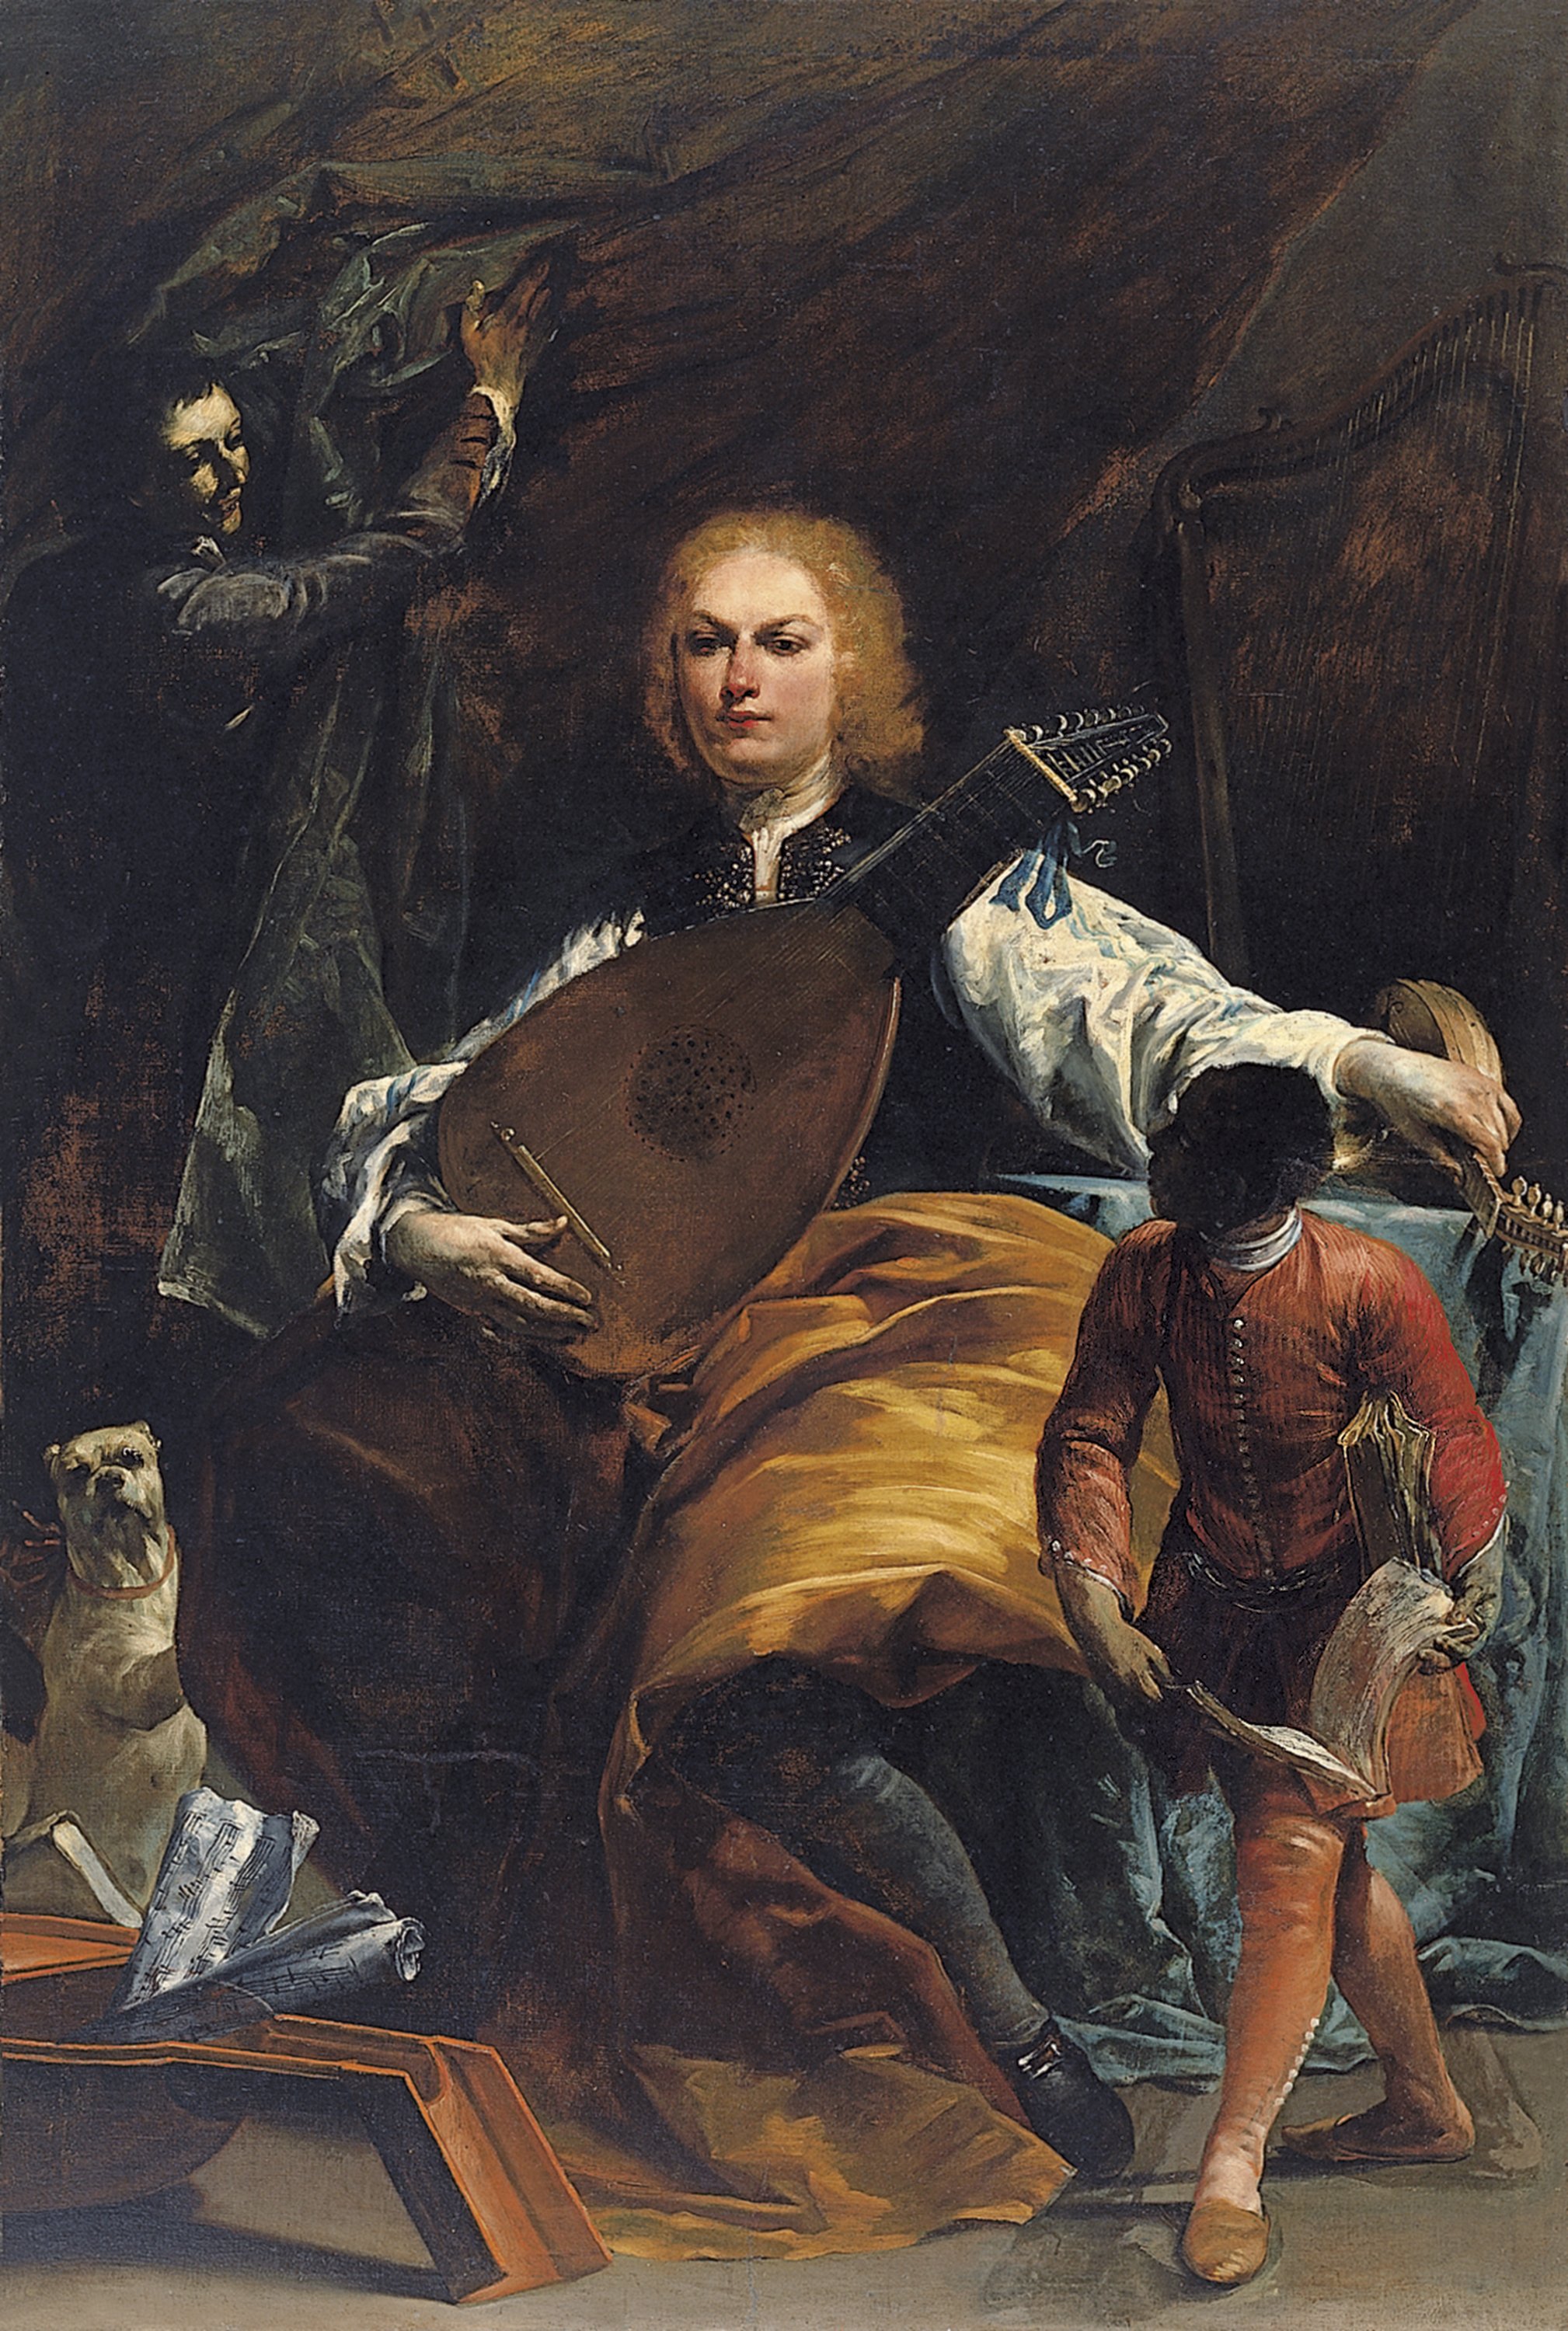 Portrait of Count Fulvio Grati. Retrato del Conde Fulvio Grati, c. 1720-1723